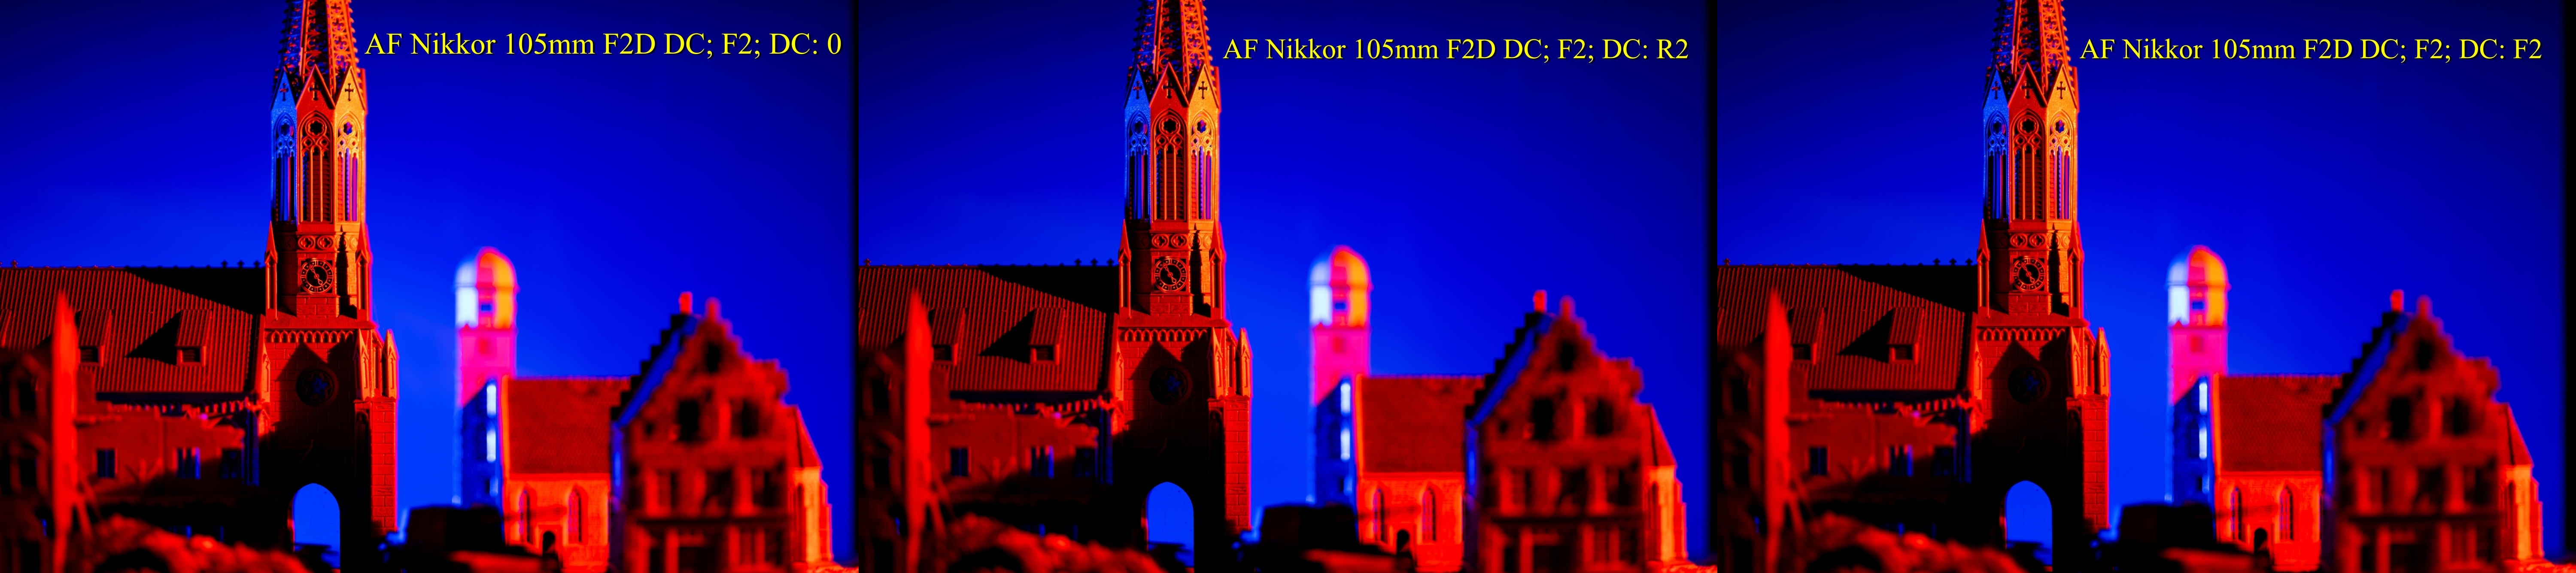 AF Nikkor 105mm F2D DC F2 Churches 1